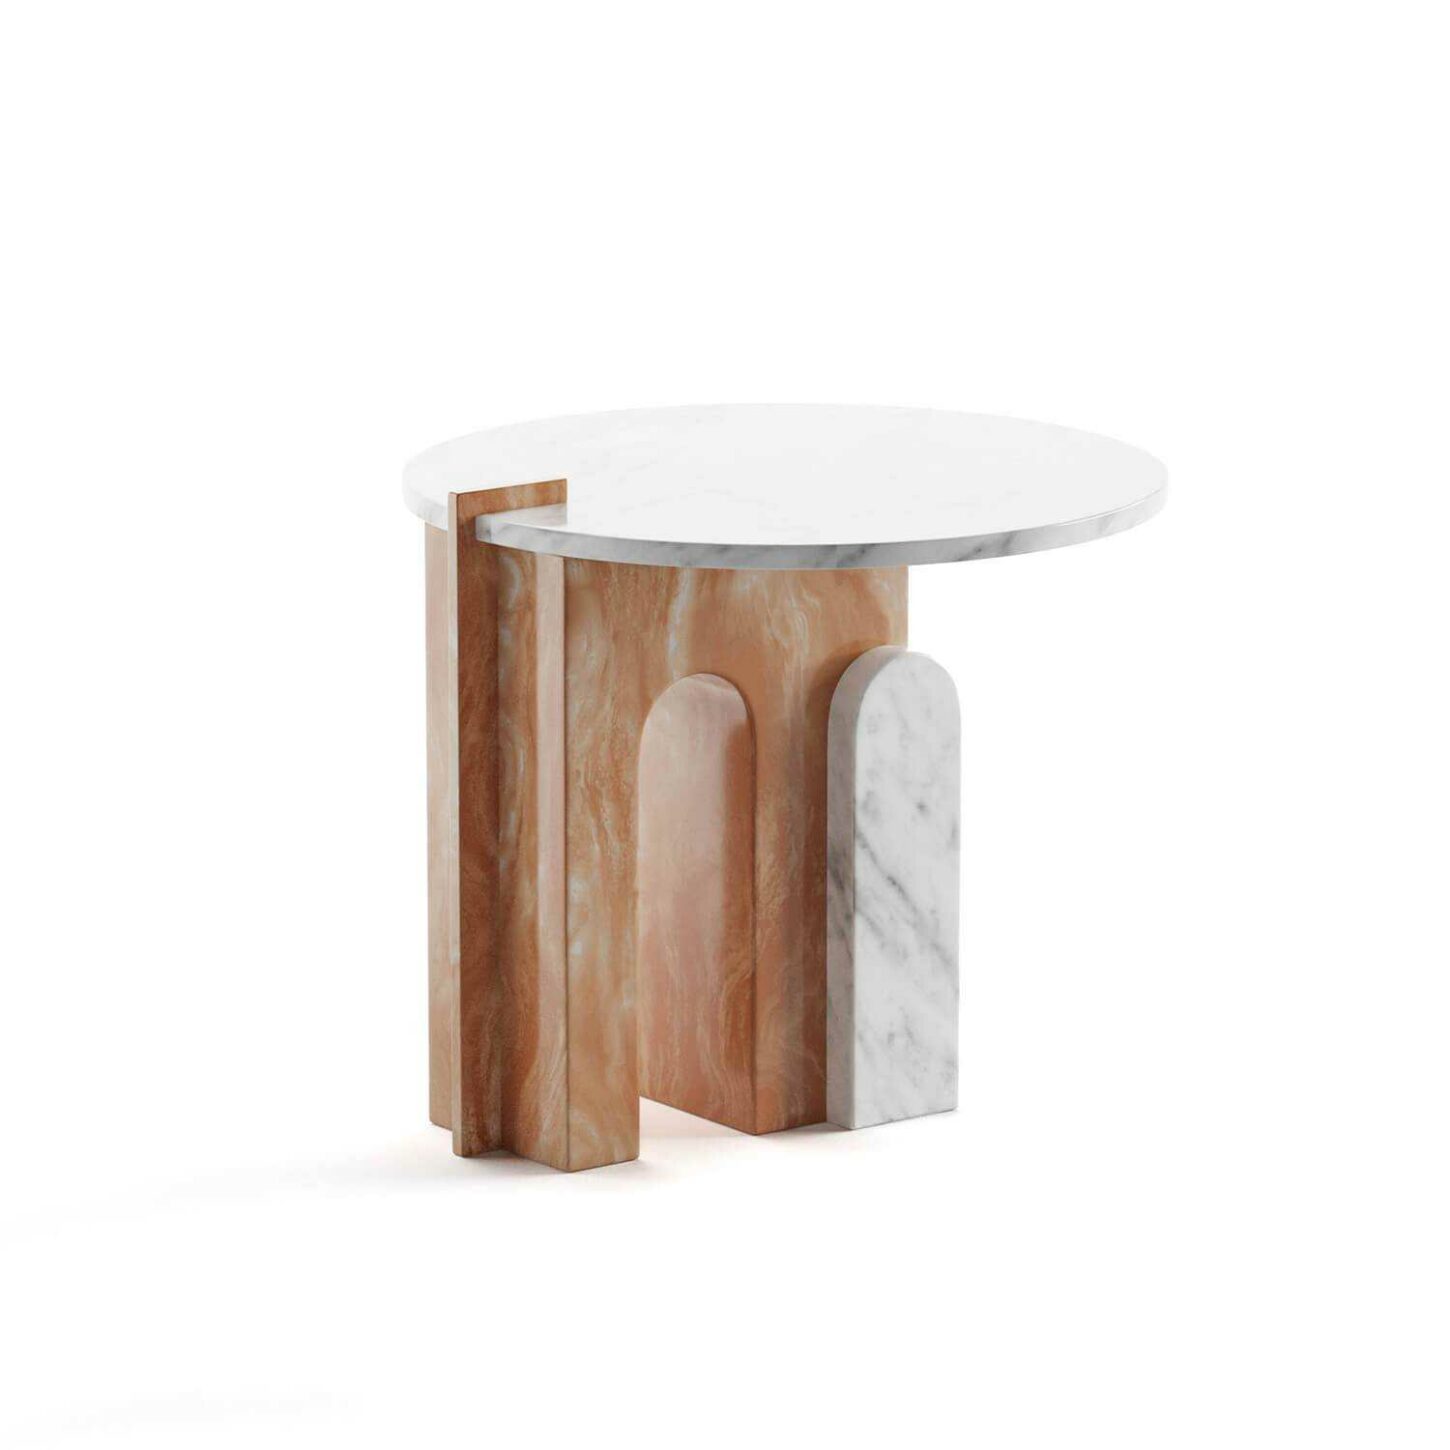 Apollo marble table